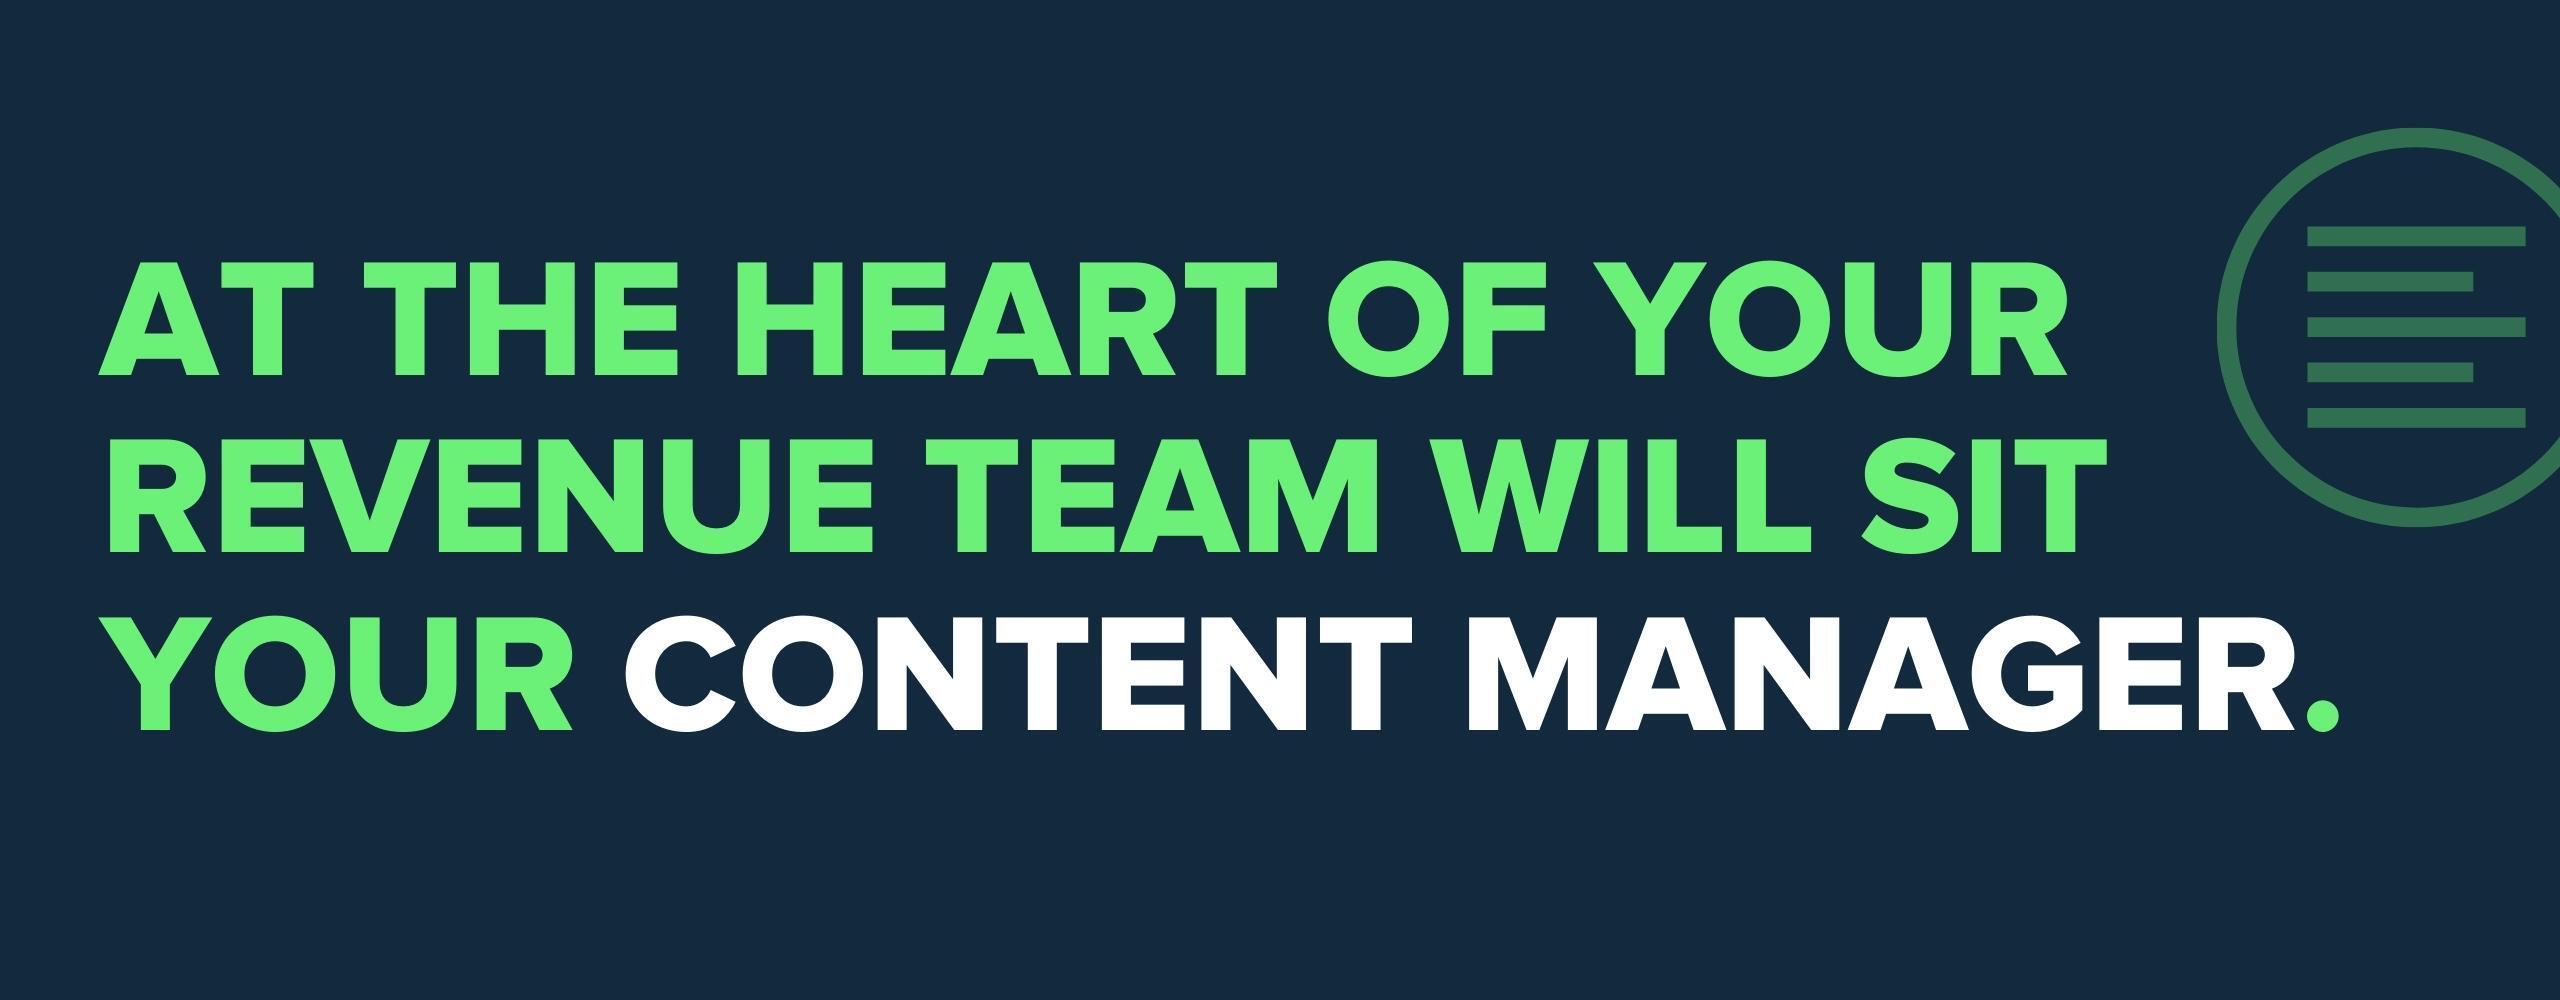 content-manager-revenue-team